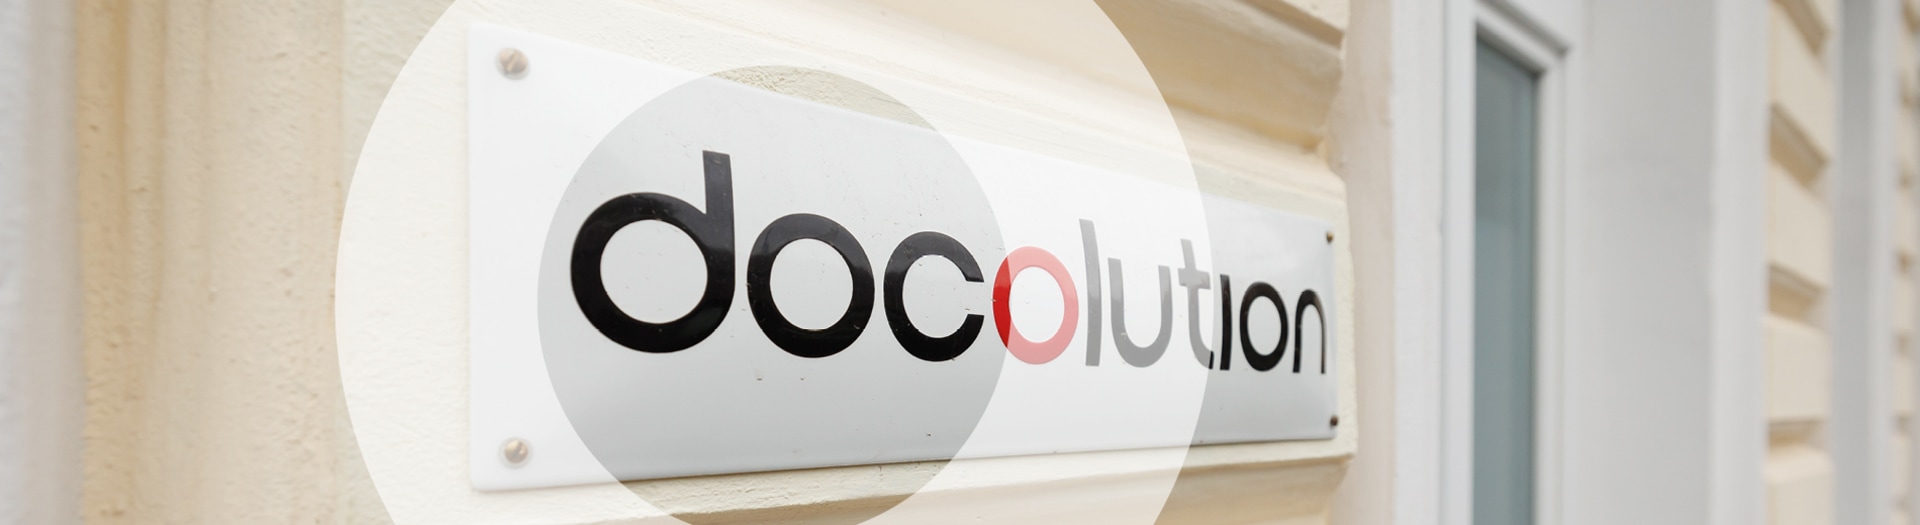 Docolution header image